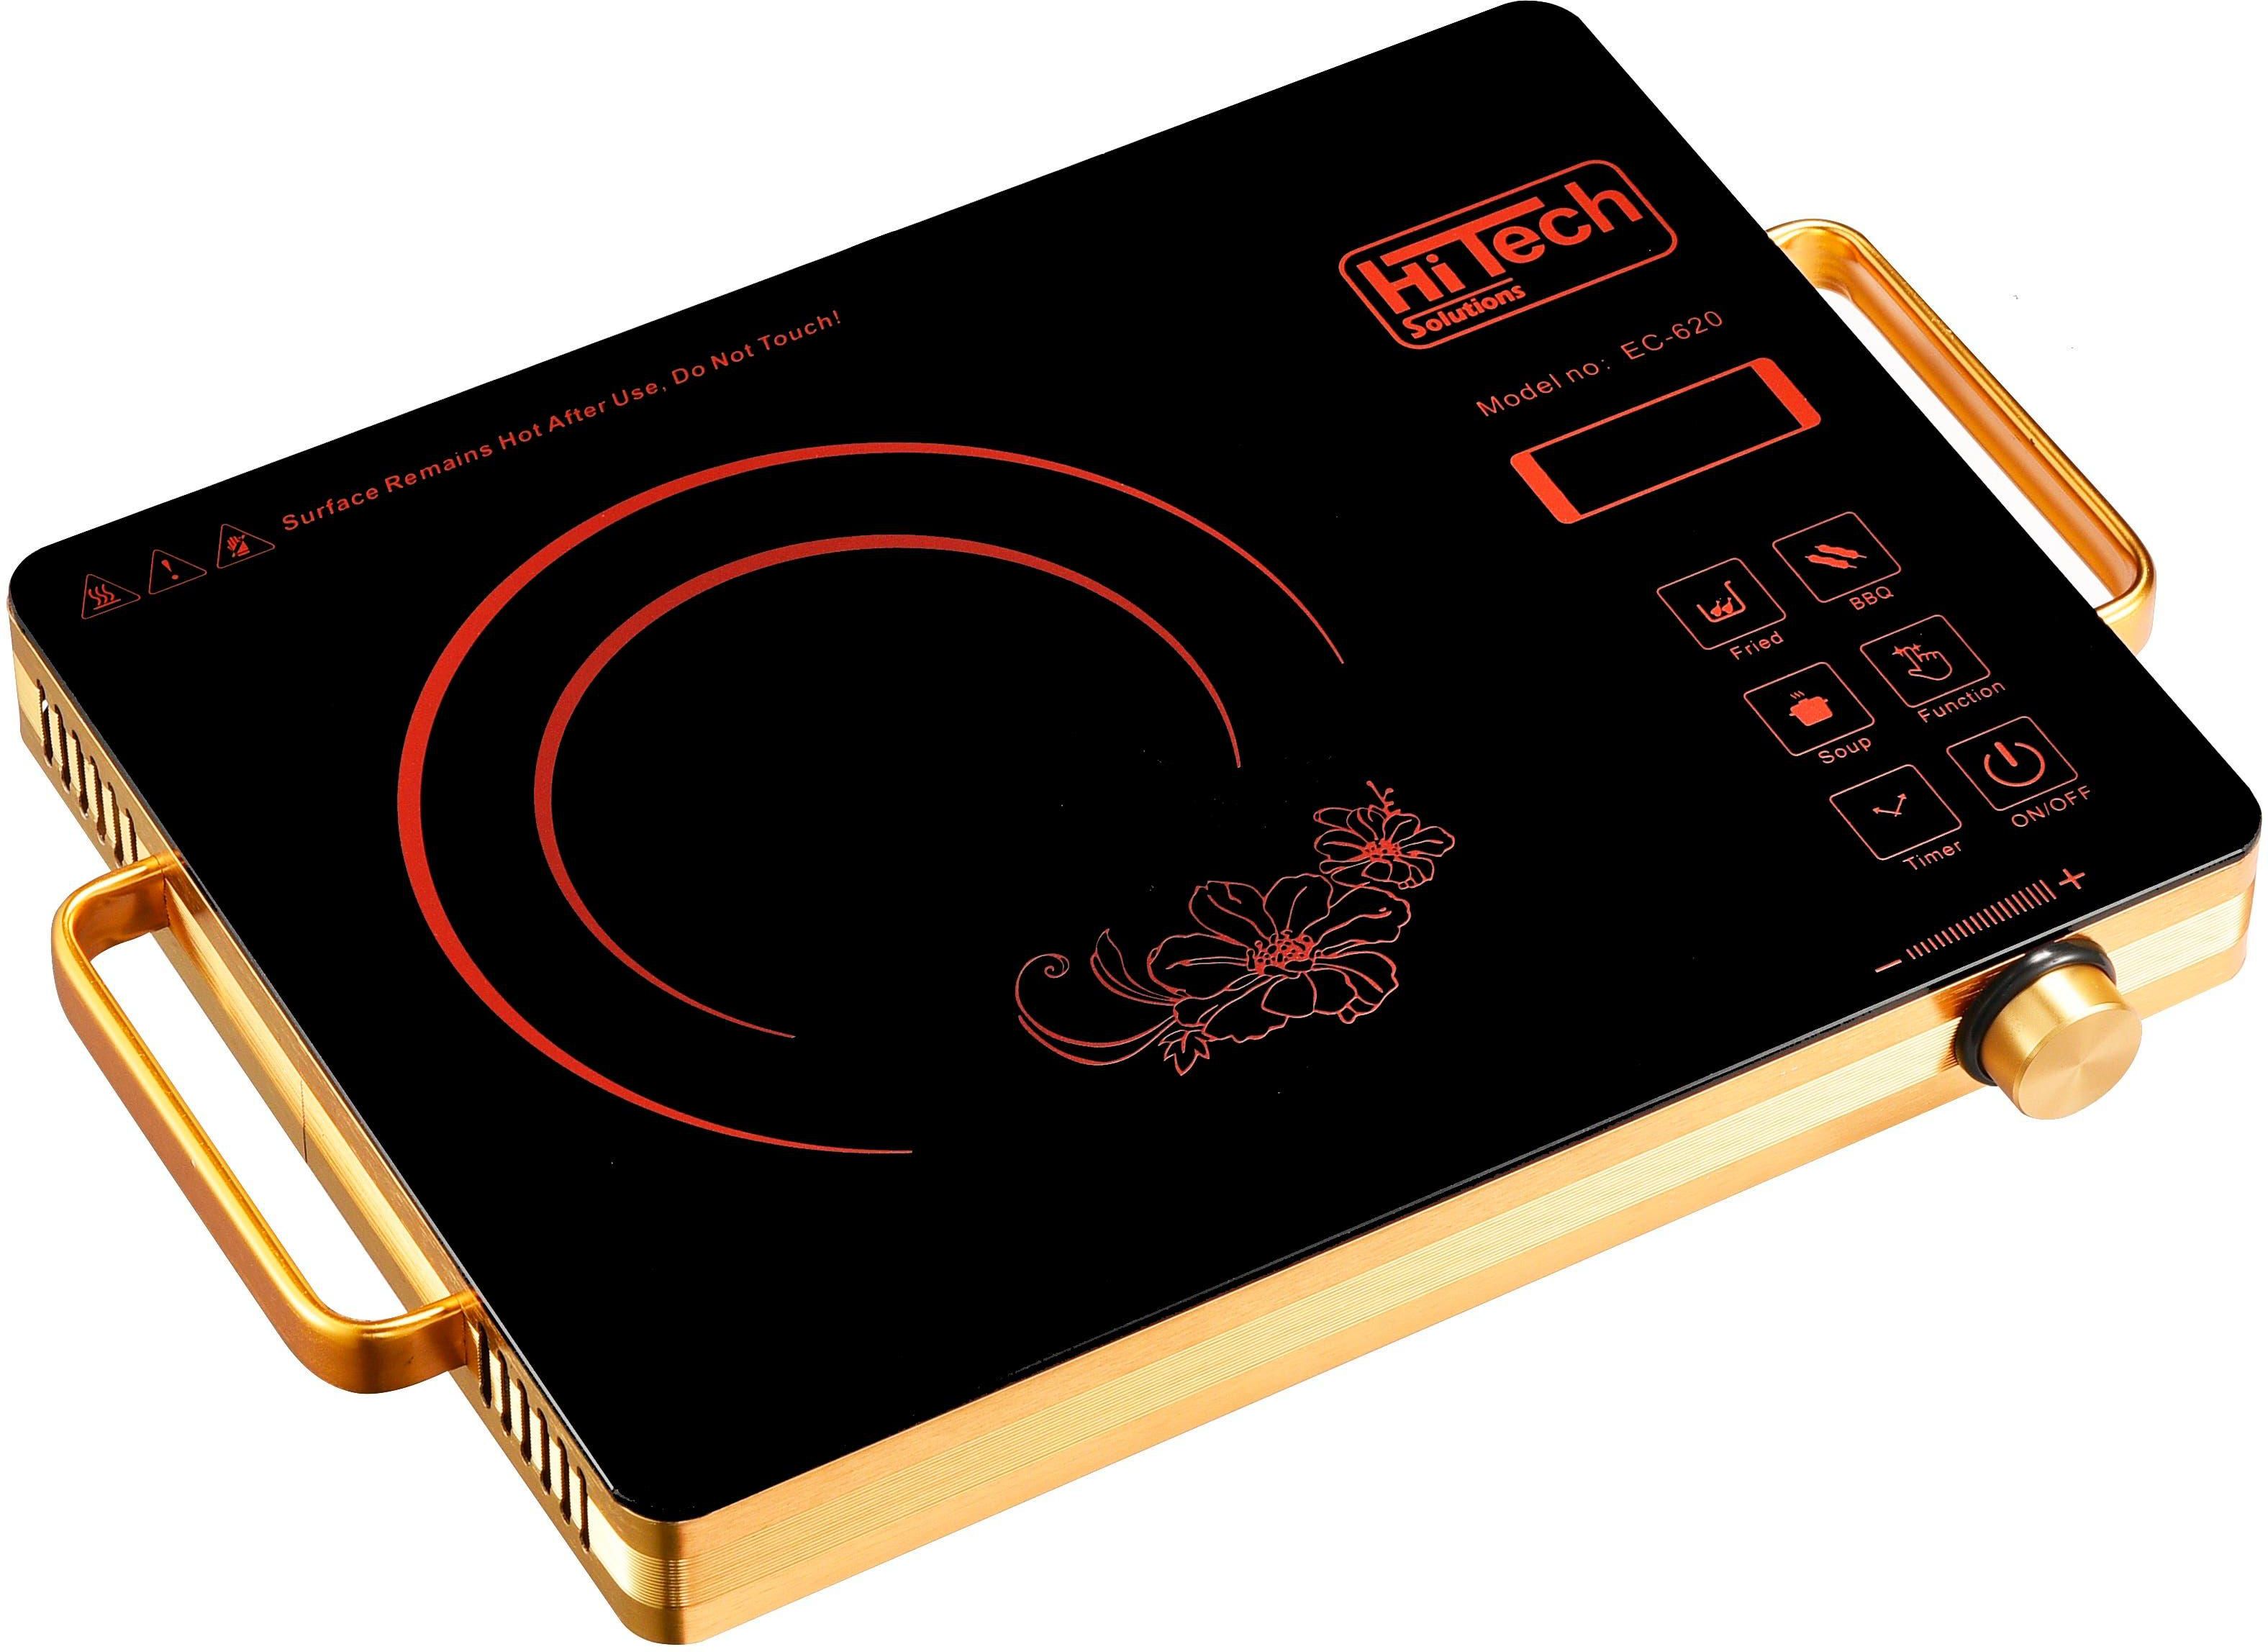 Get Hi Tech Solutions EC-620 Electric Digital Surface Cooker, 2000 watt - Black Gold with best offers | Raneen.com